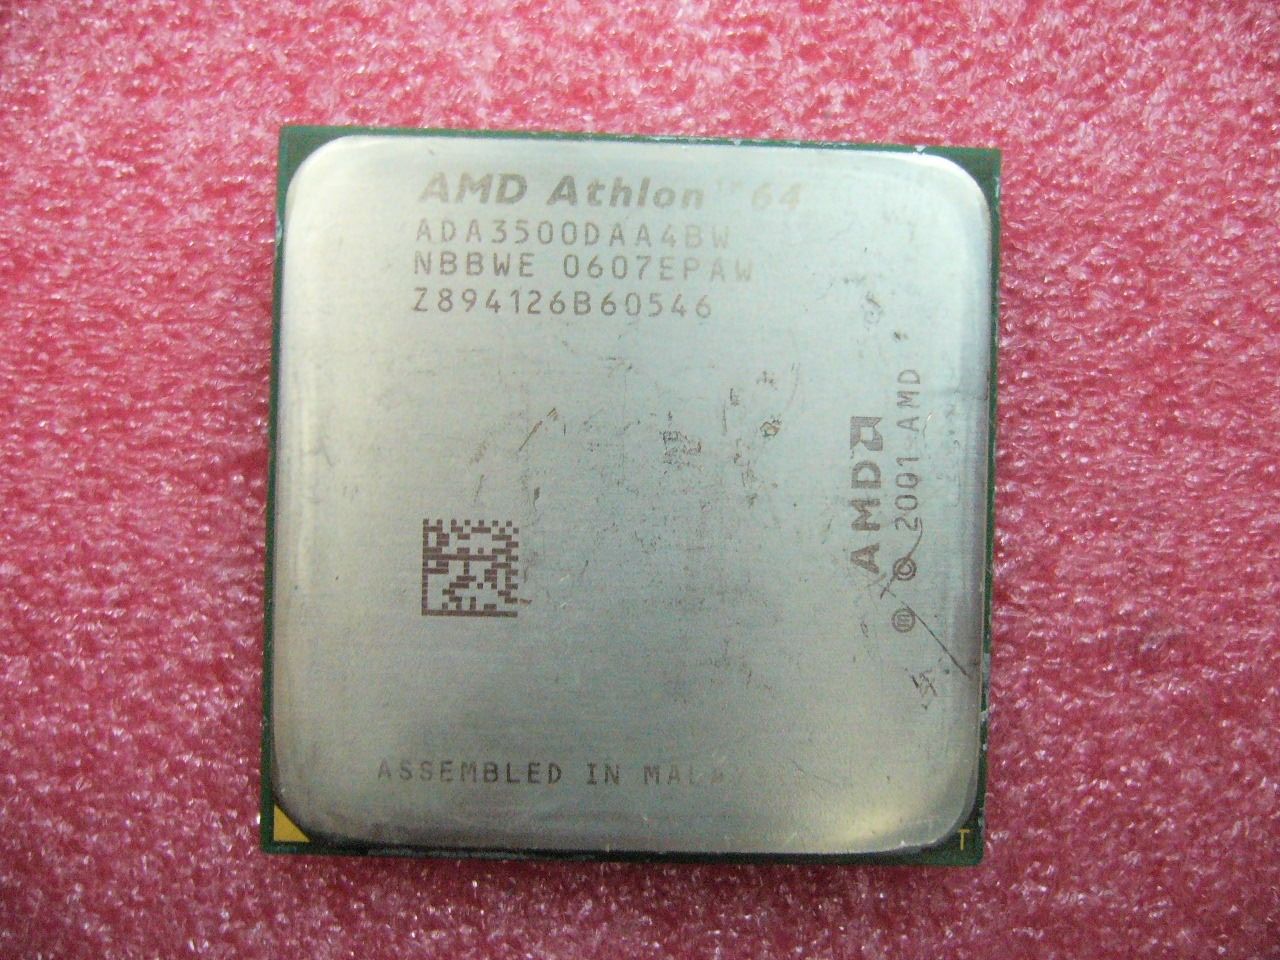 QTY 1x AMD Athlon 64 3500+ 2.2 GHz (ADA3500DAA4BW) CPU Socket 939